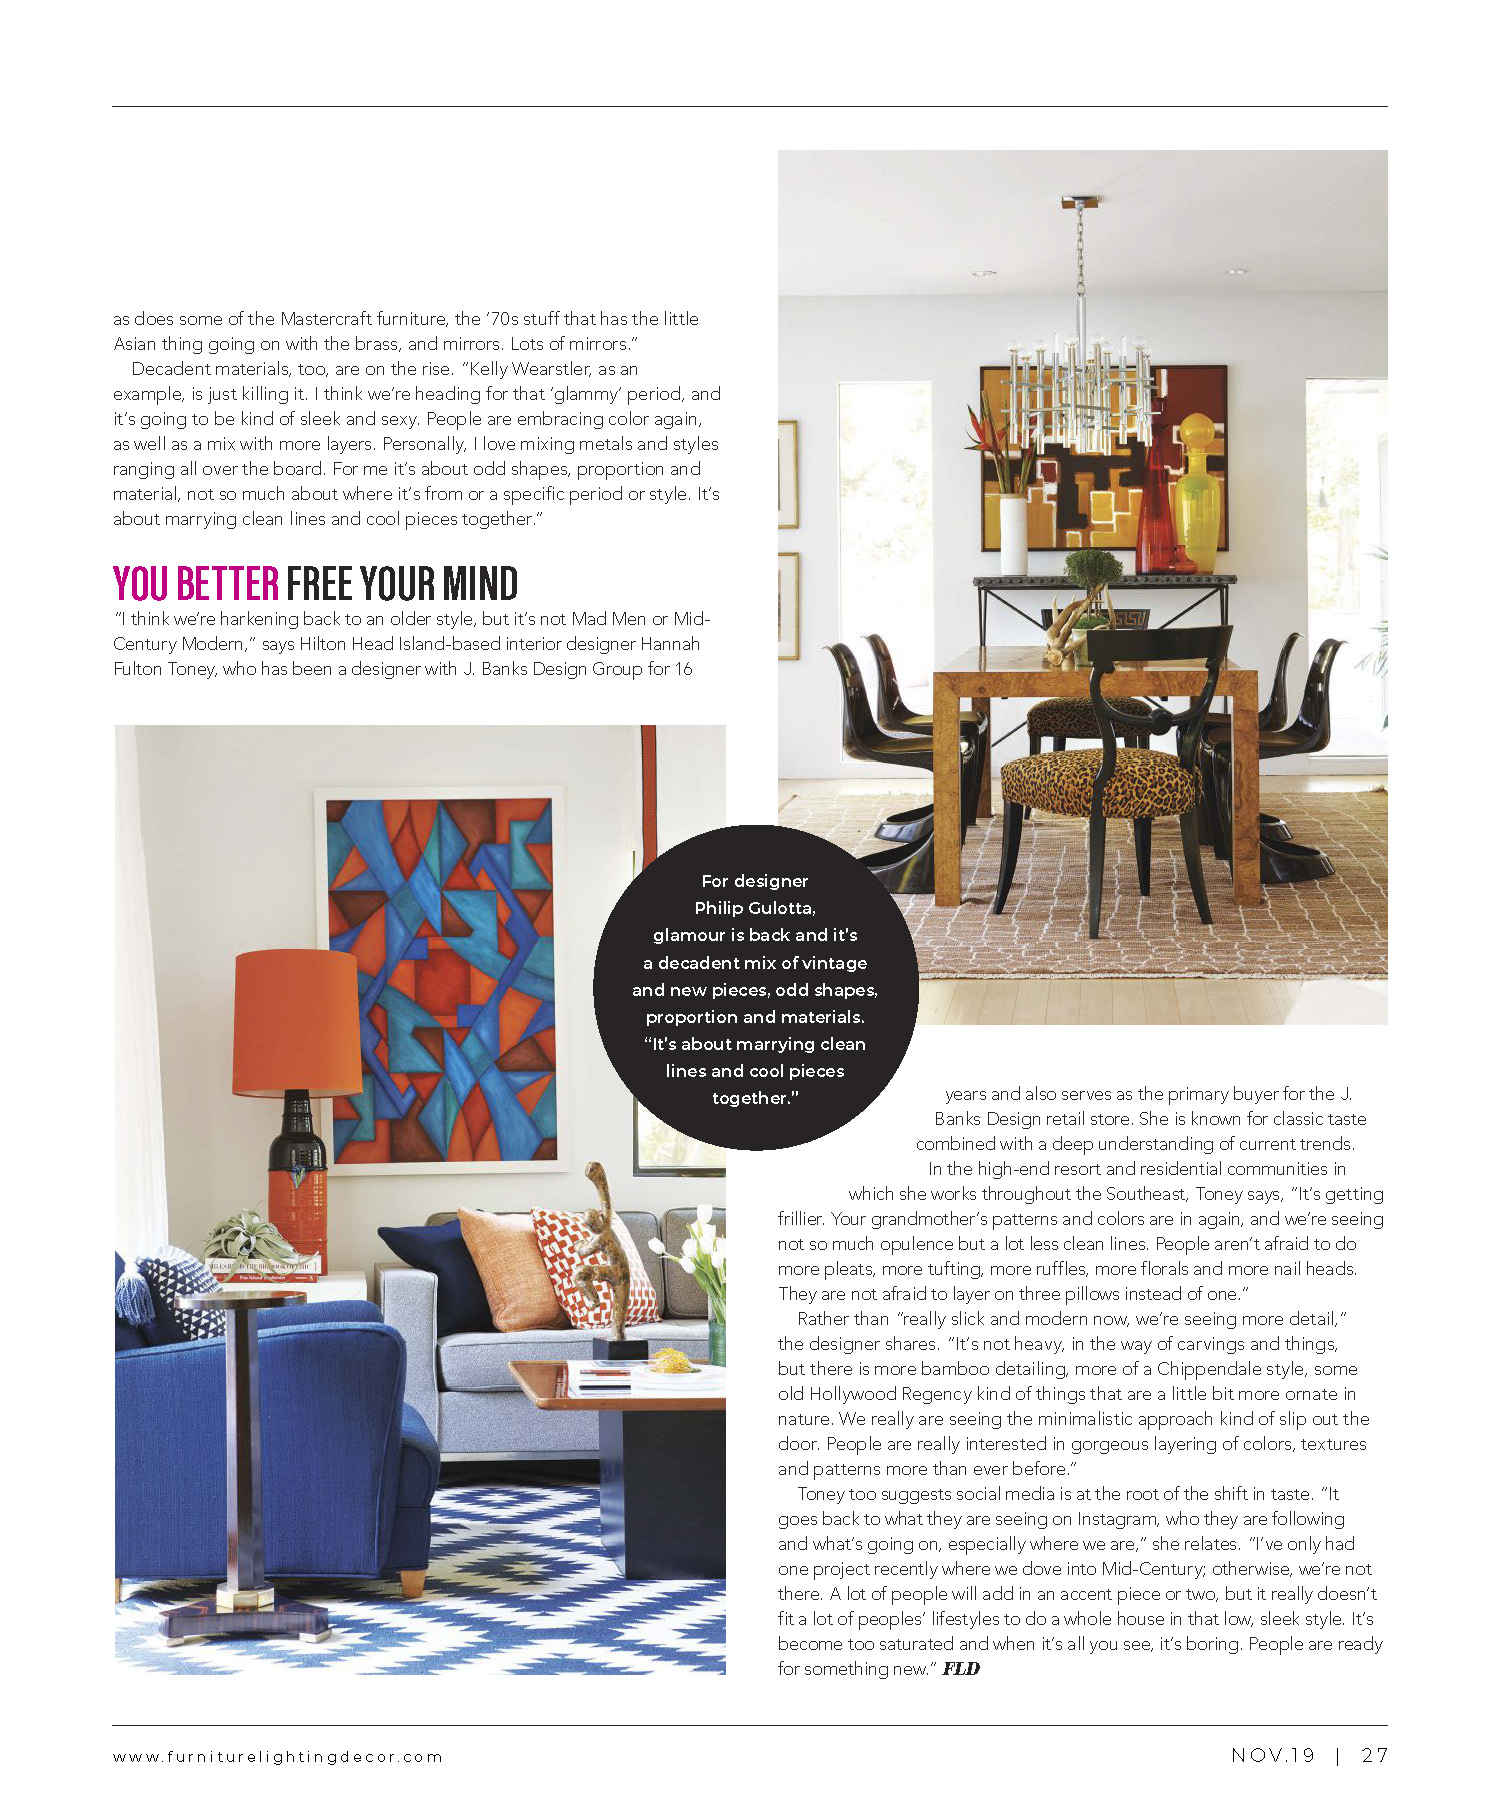 Hilton Head Interior Designer featured in Furniture Lighting Decor magazine